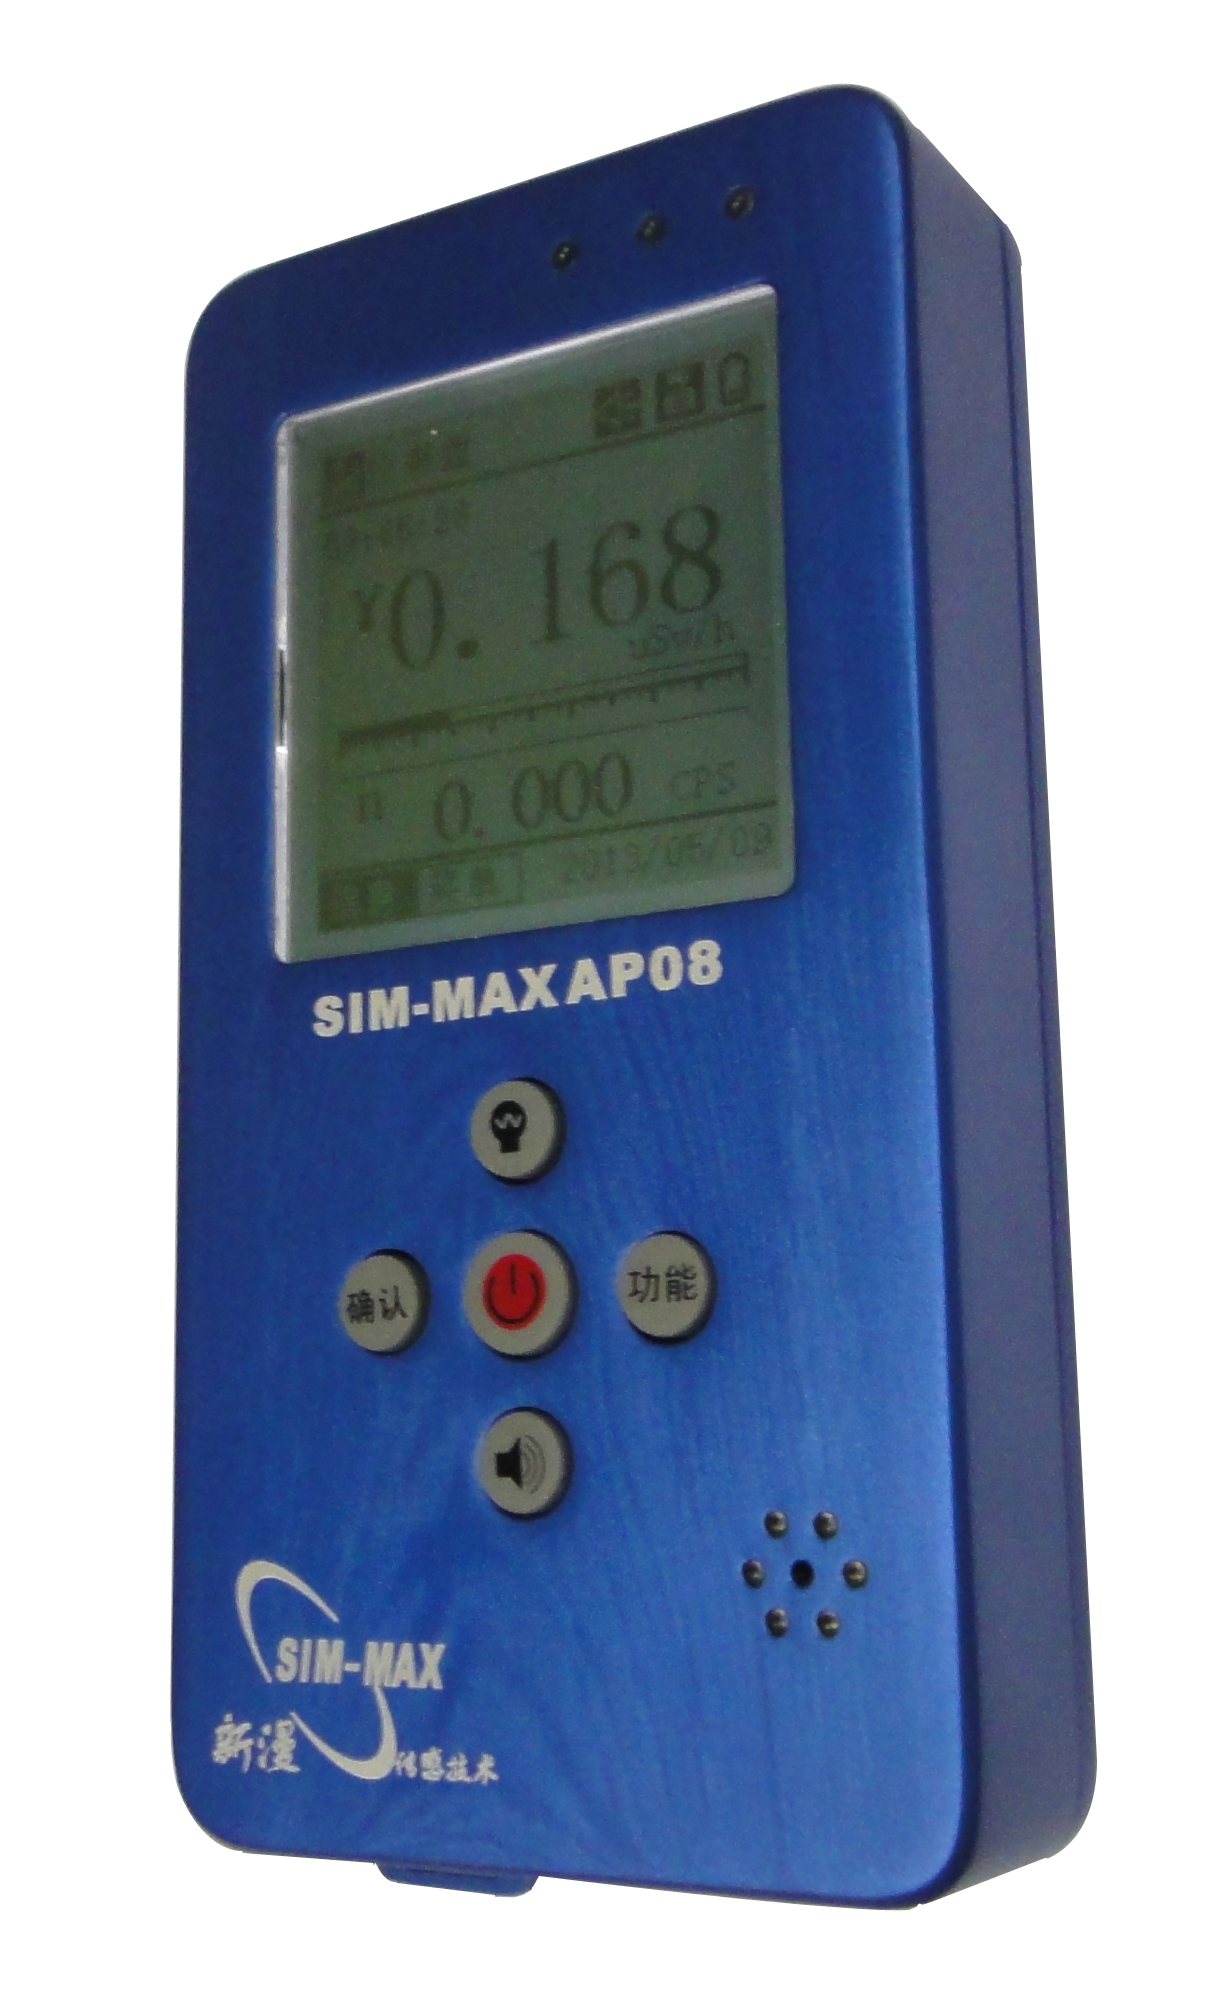 SIM-MAX AP08 高量程中子伽玛辐射测量仪